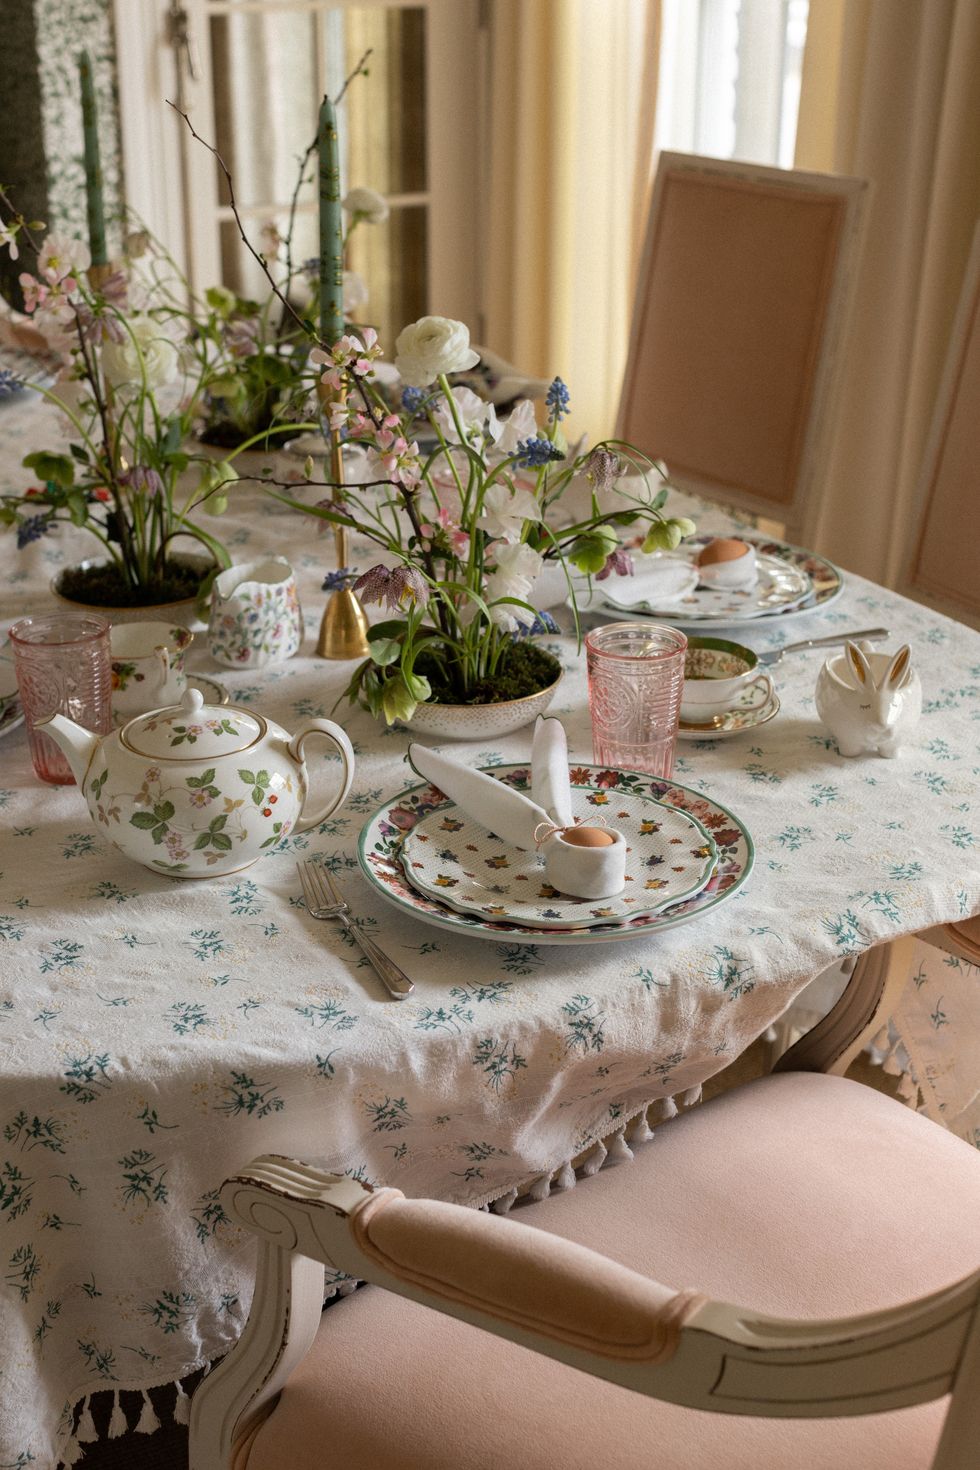 a table with a tea set and teacups